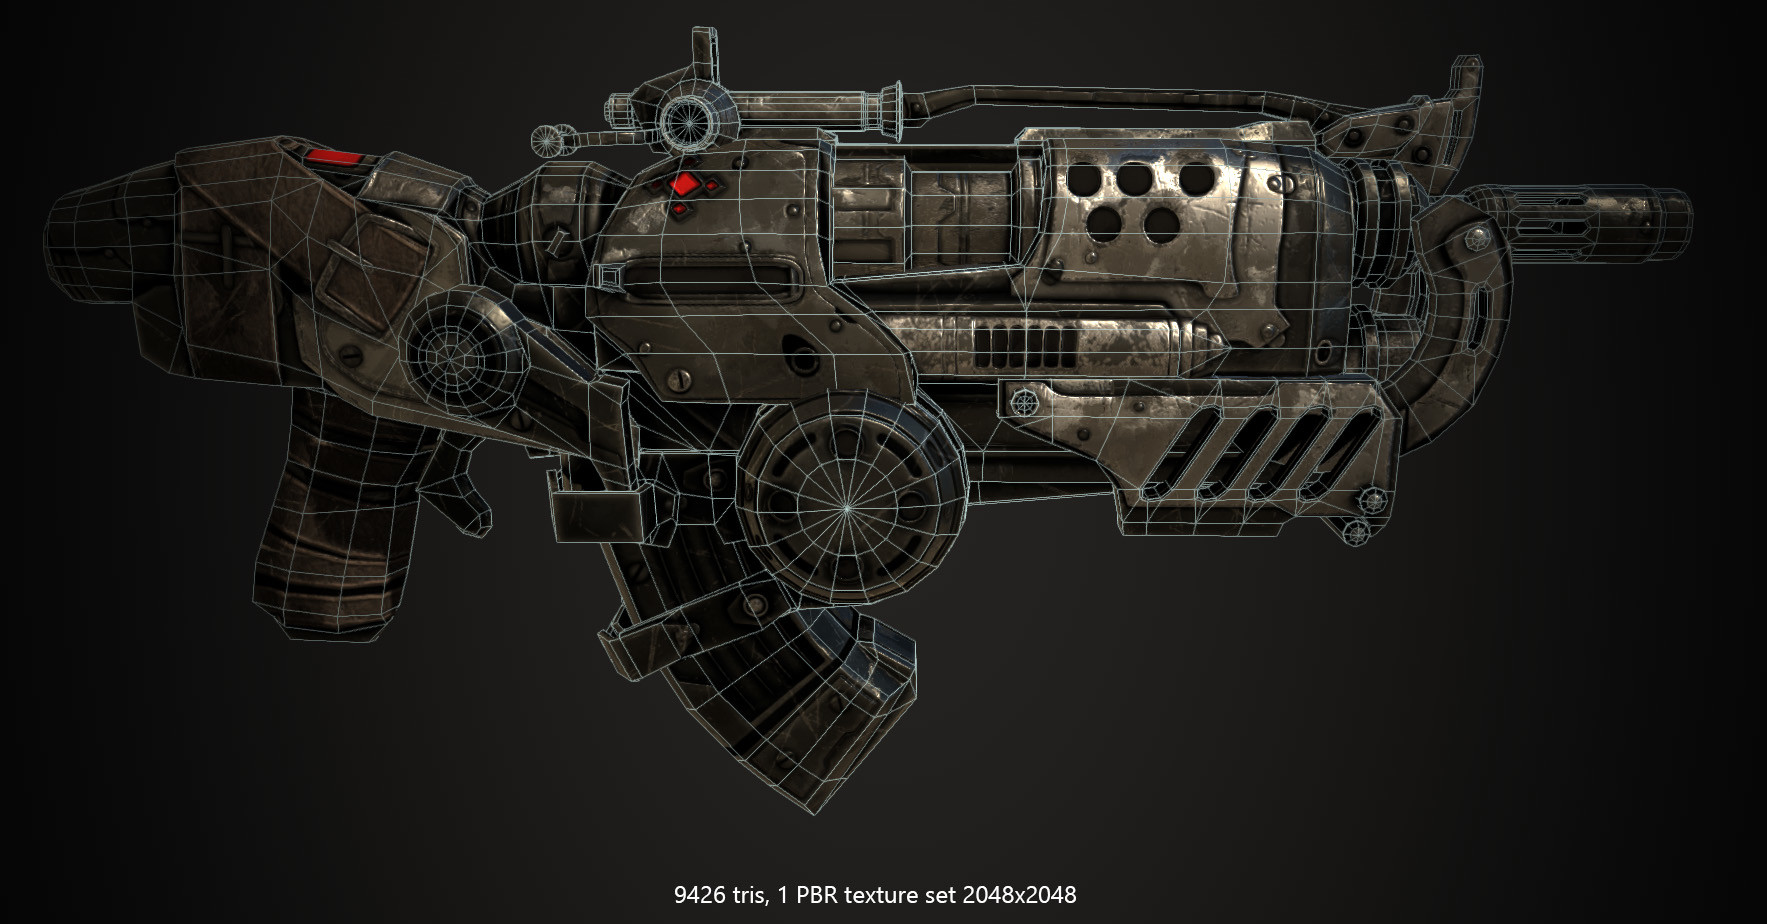 Gears Of War 3 Hammerburst 2 Prop Replica 